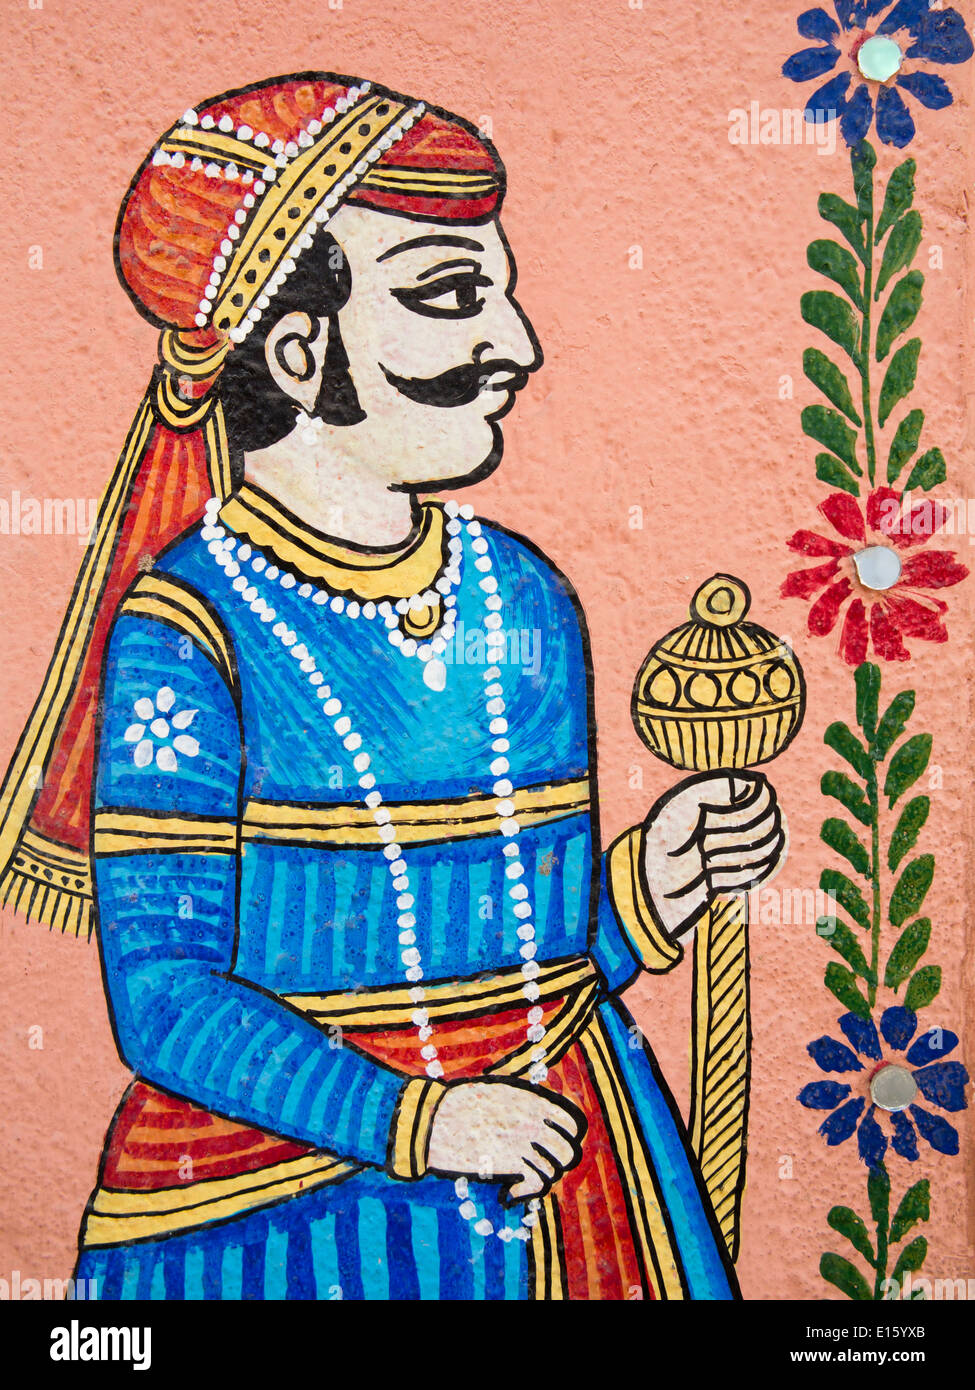 Indien, Rajasthan, Udaipur, traditionelle Wandmalerei der Rajput-Mann Stockfoto